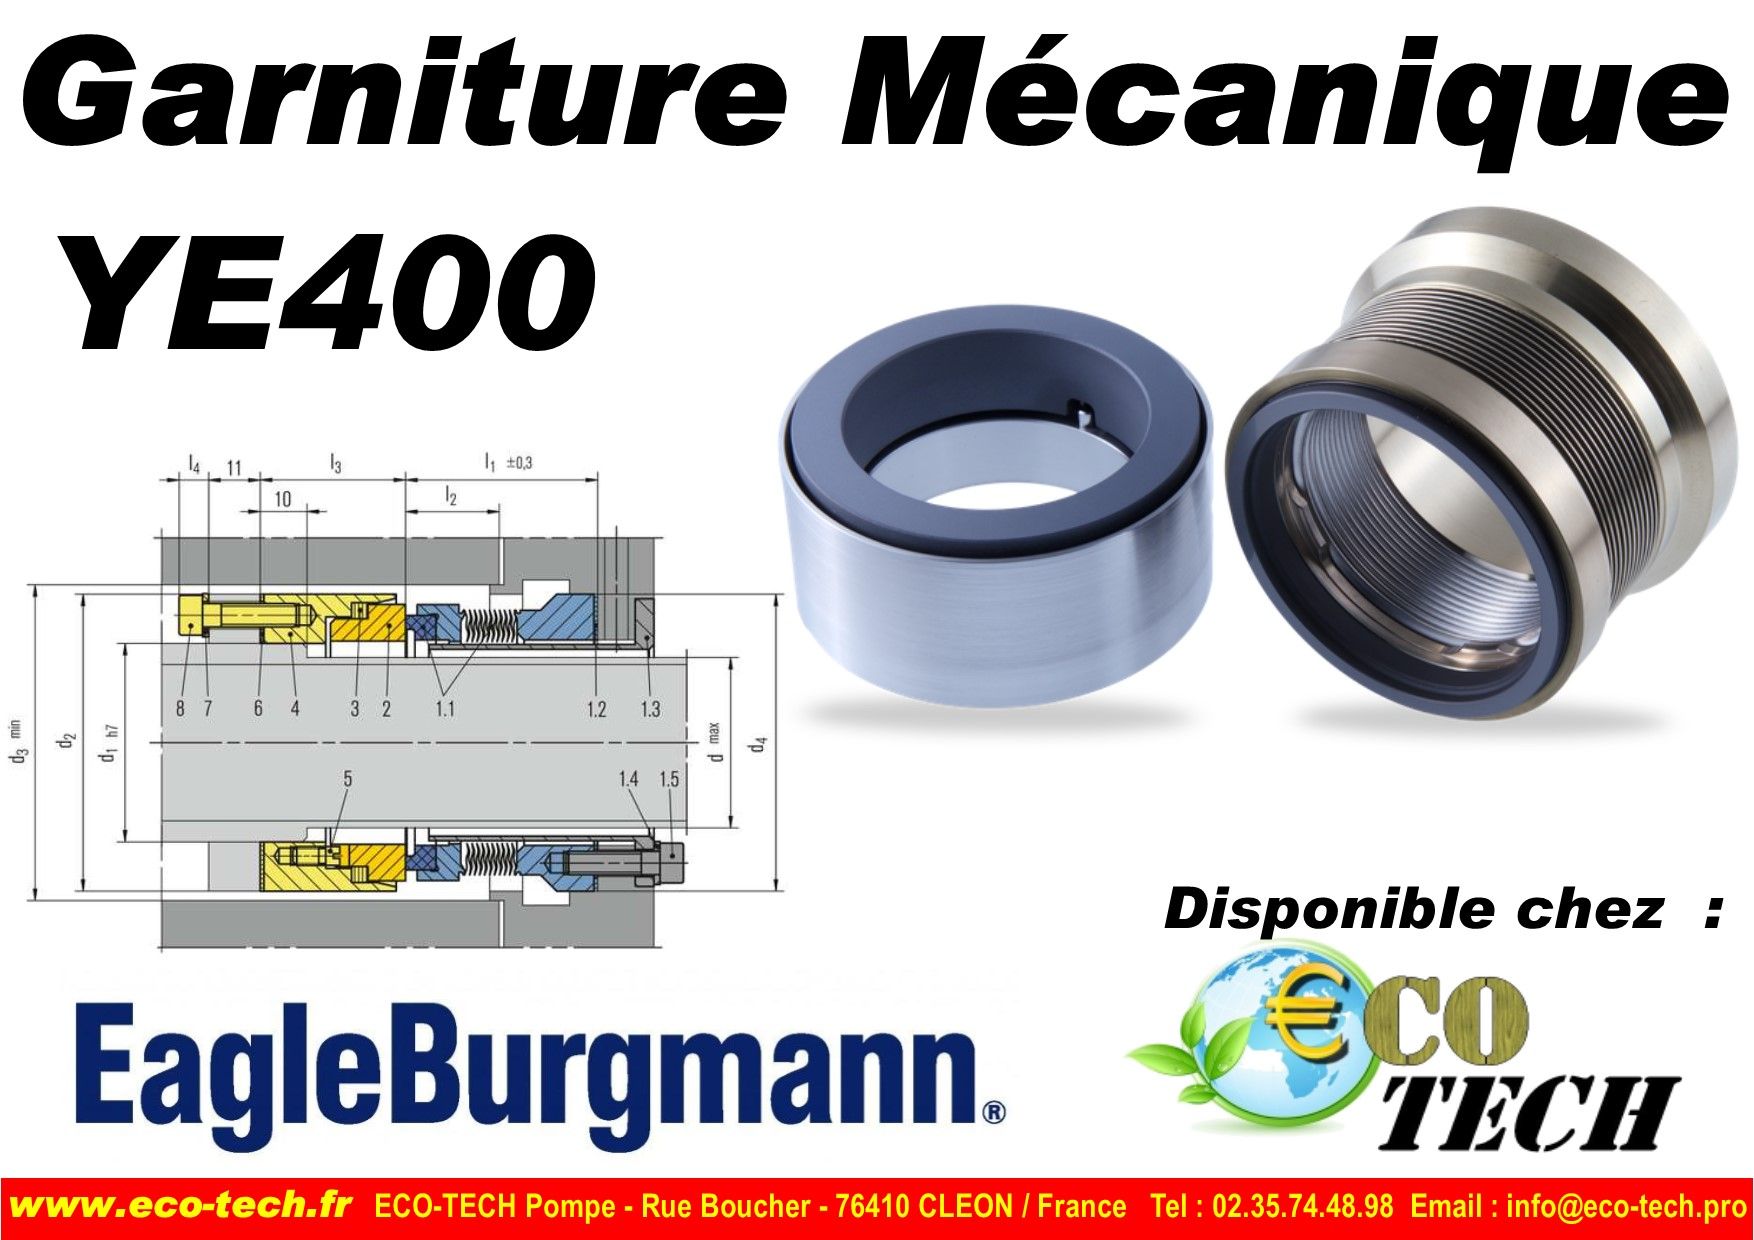 Garniture mécanique  ye400 eagle burgmann distributeur eco-tech normandie france_0